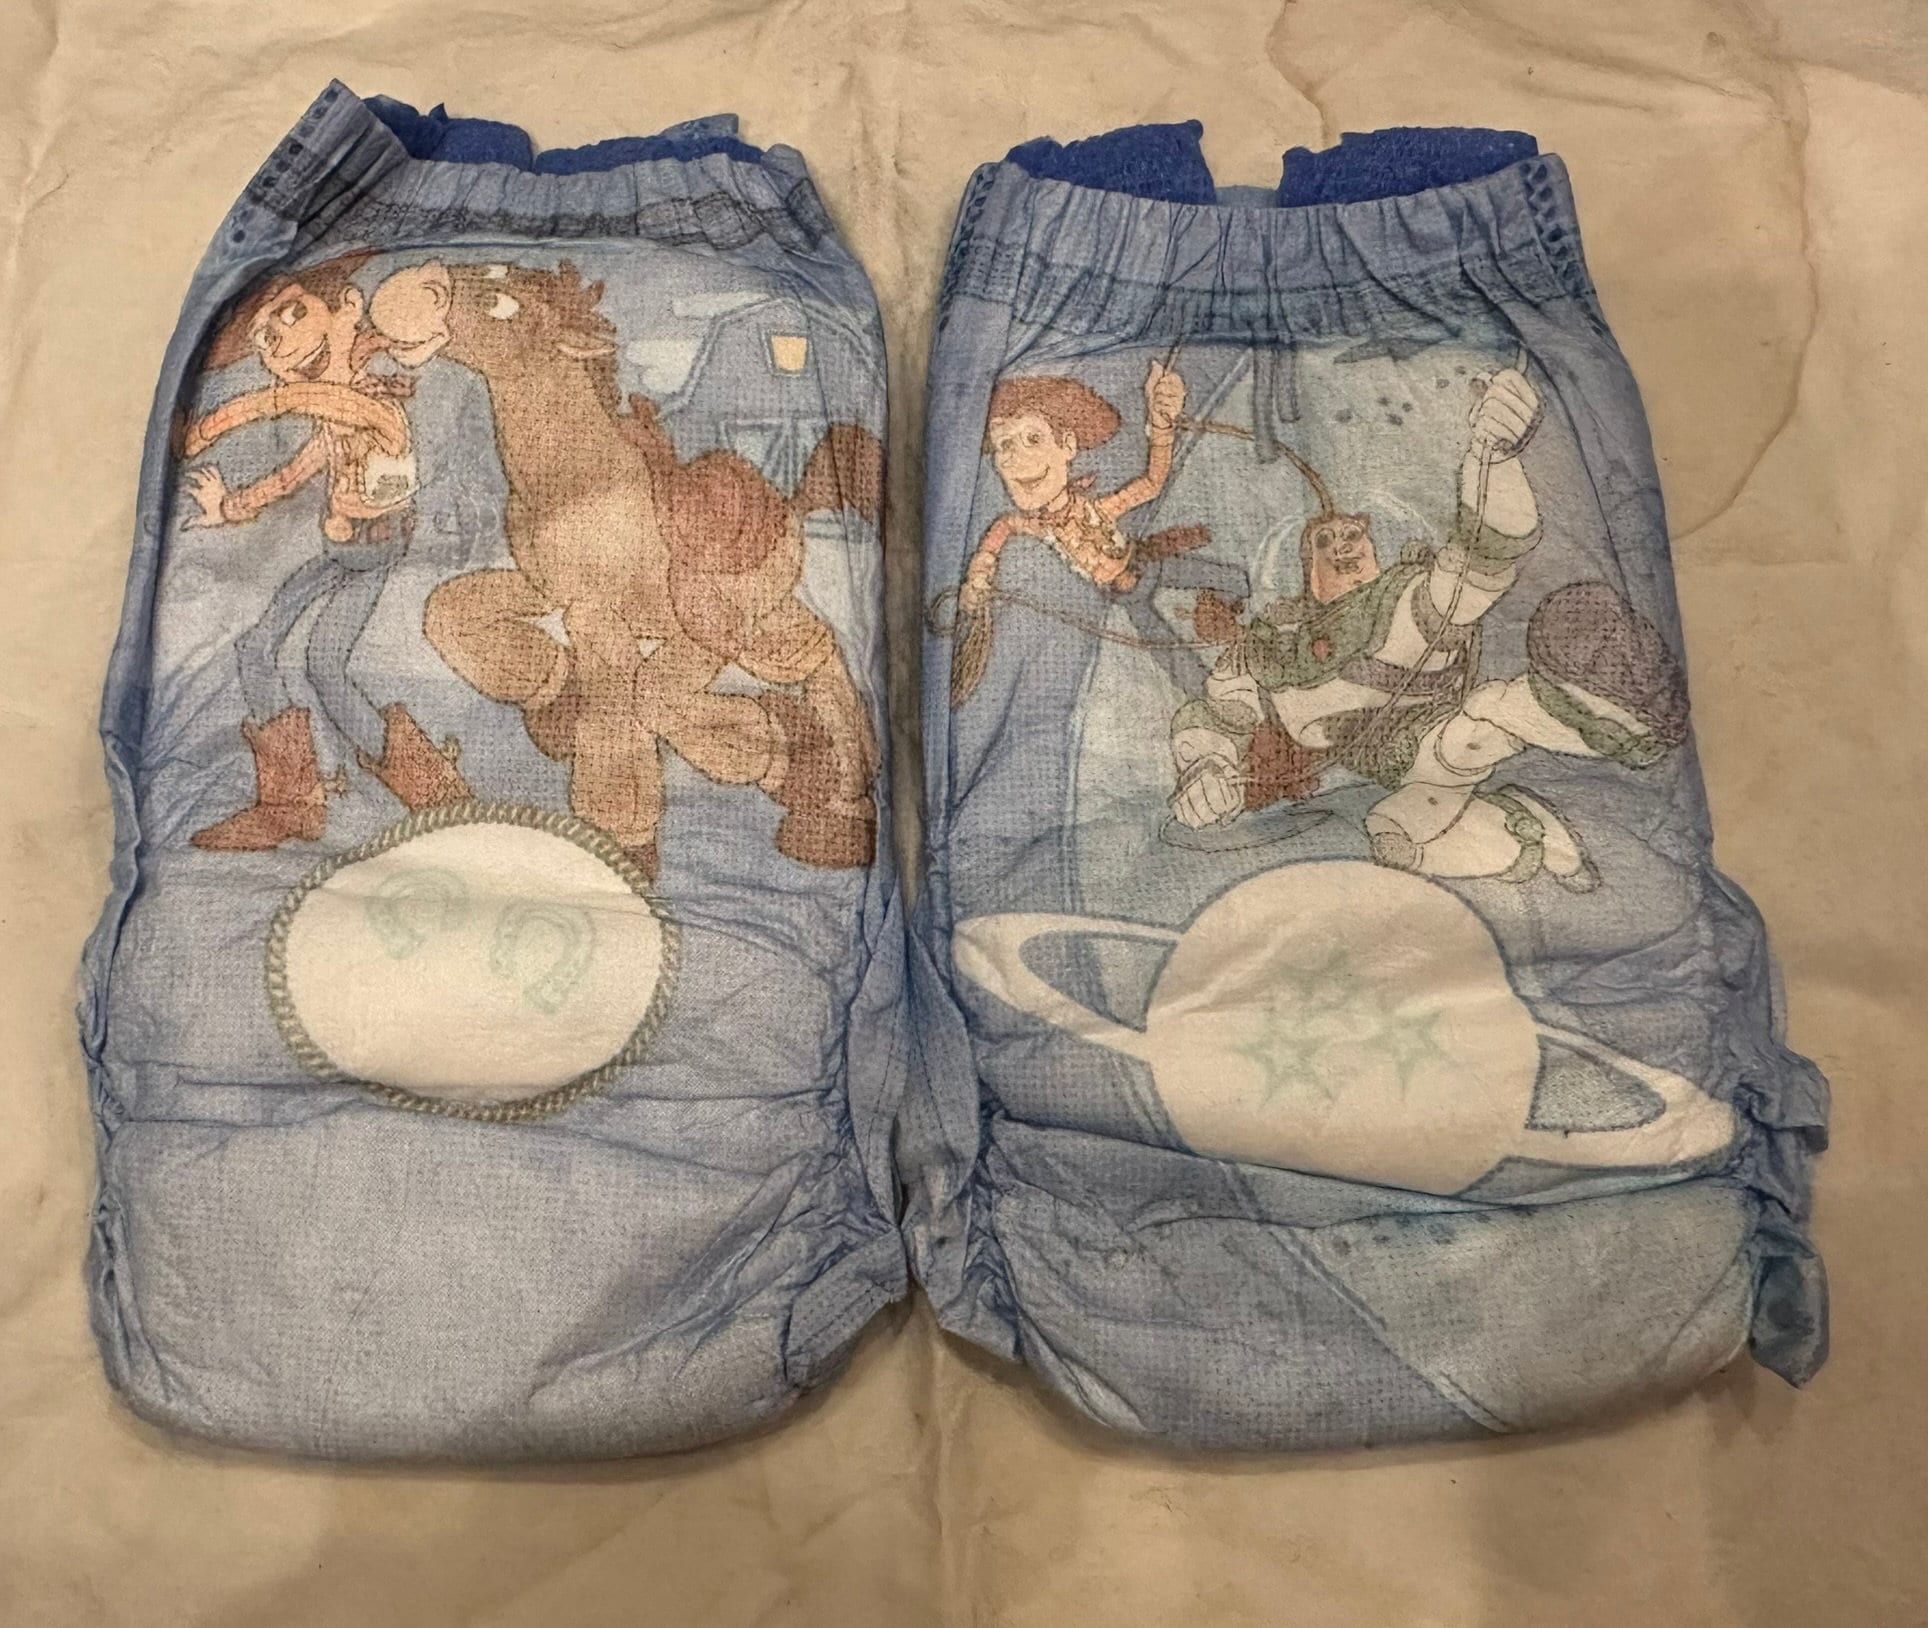 Toy Story Underwear 